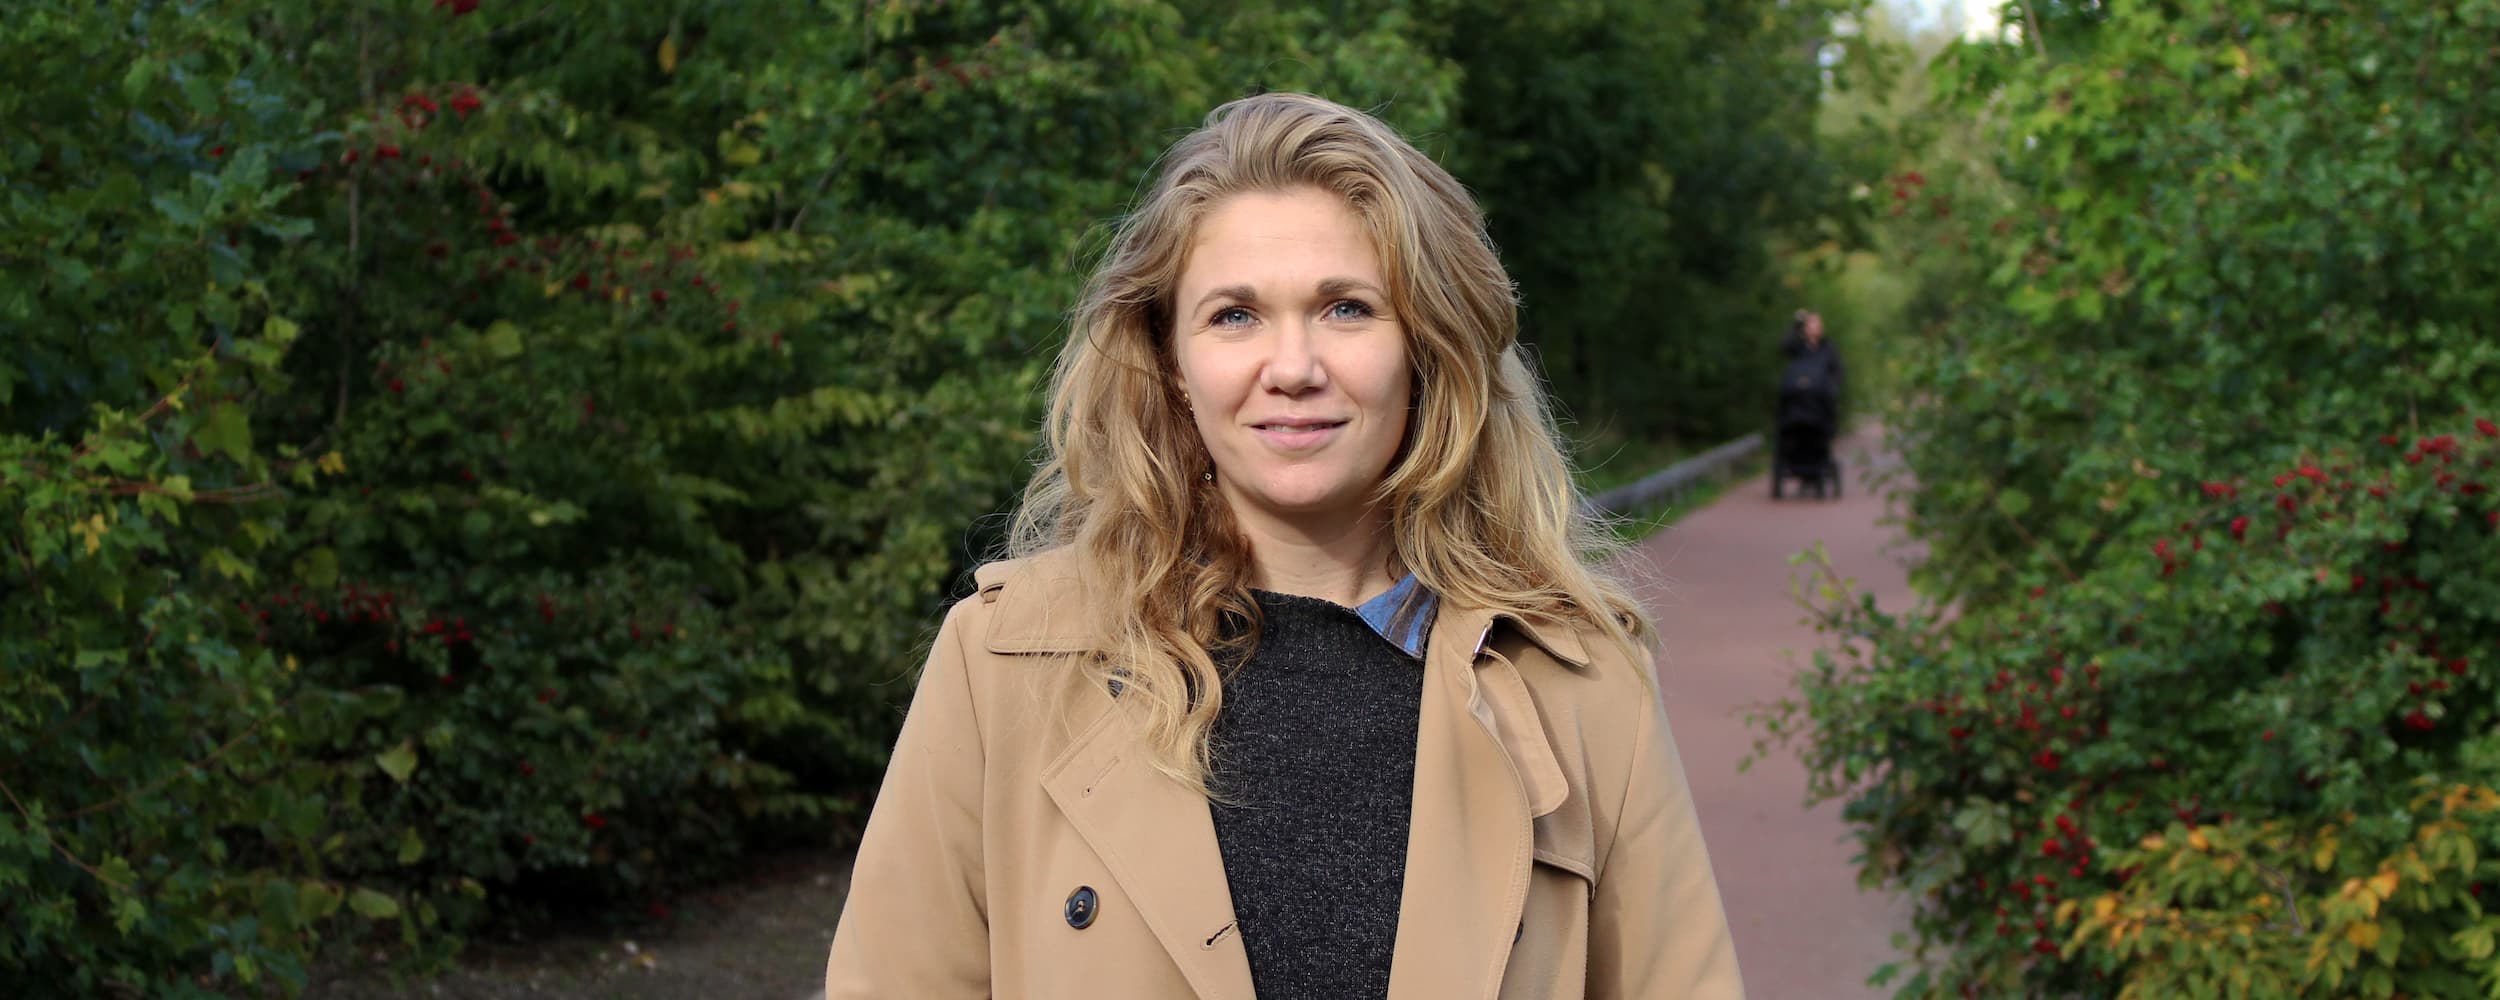 Pil Solhart er ny projektleder i Grundejerforeningssekretariatet Ørestad.